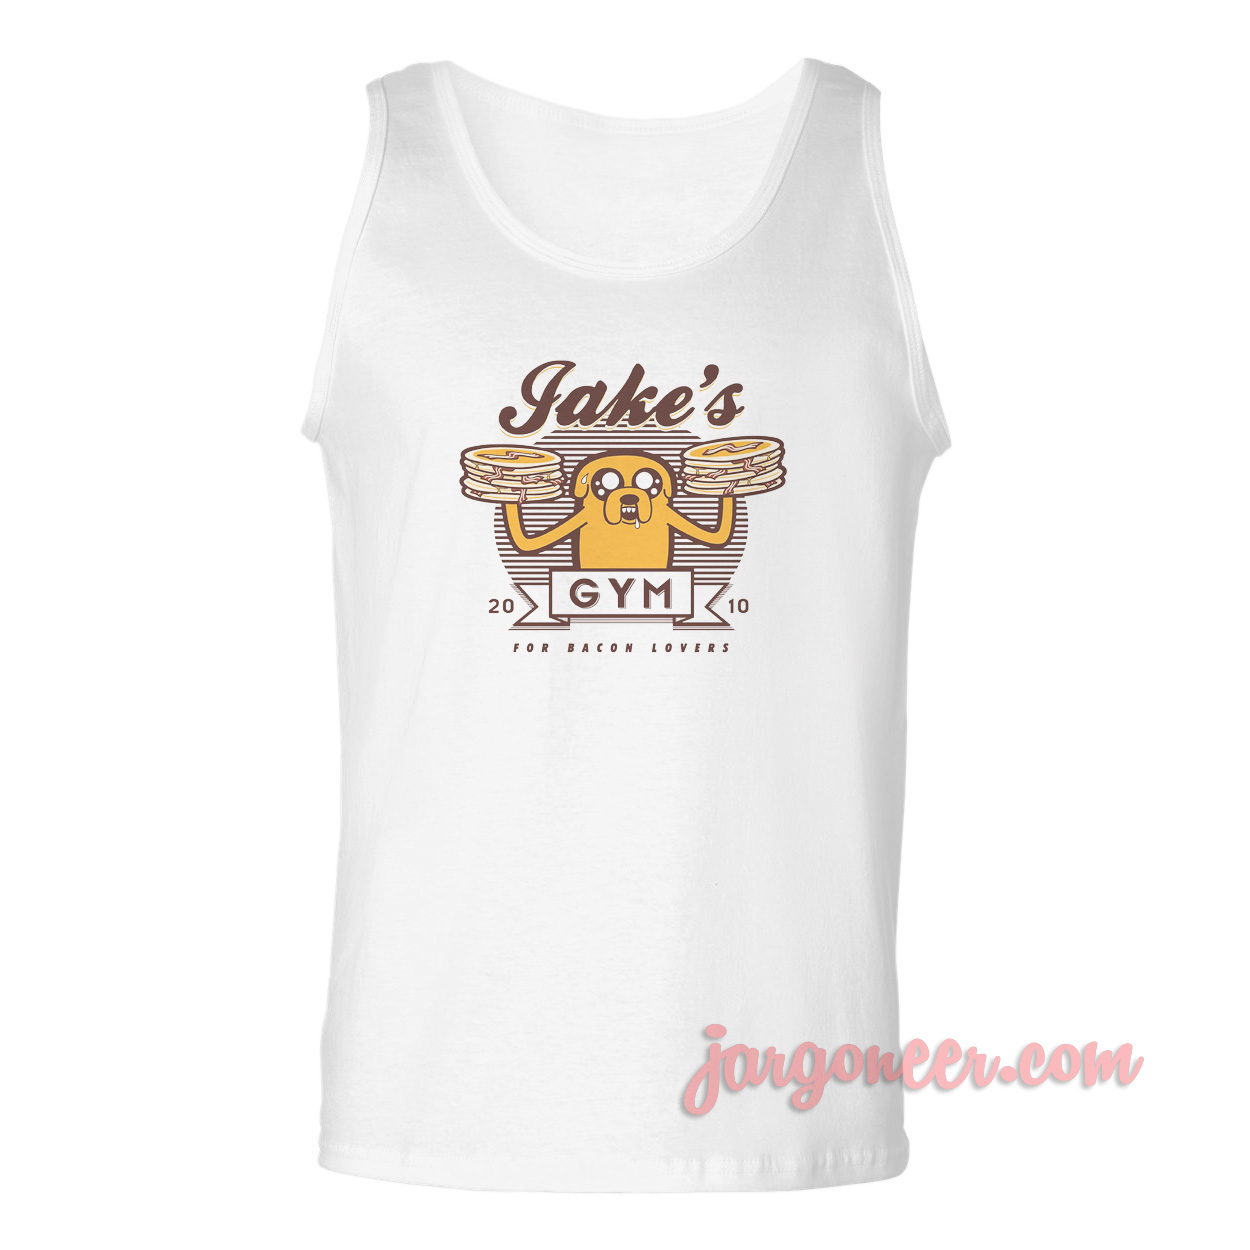 Jakes Gym - Shop Unique Graphic Cool Shirt Designs